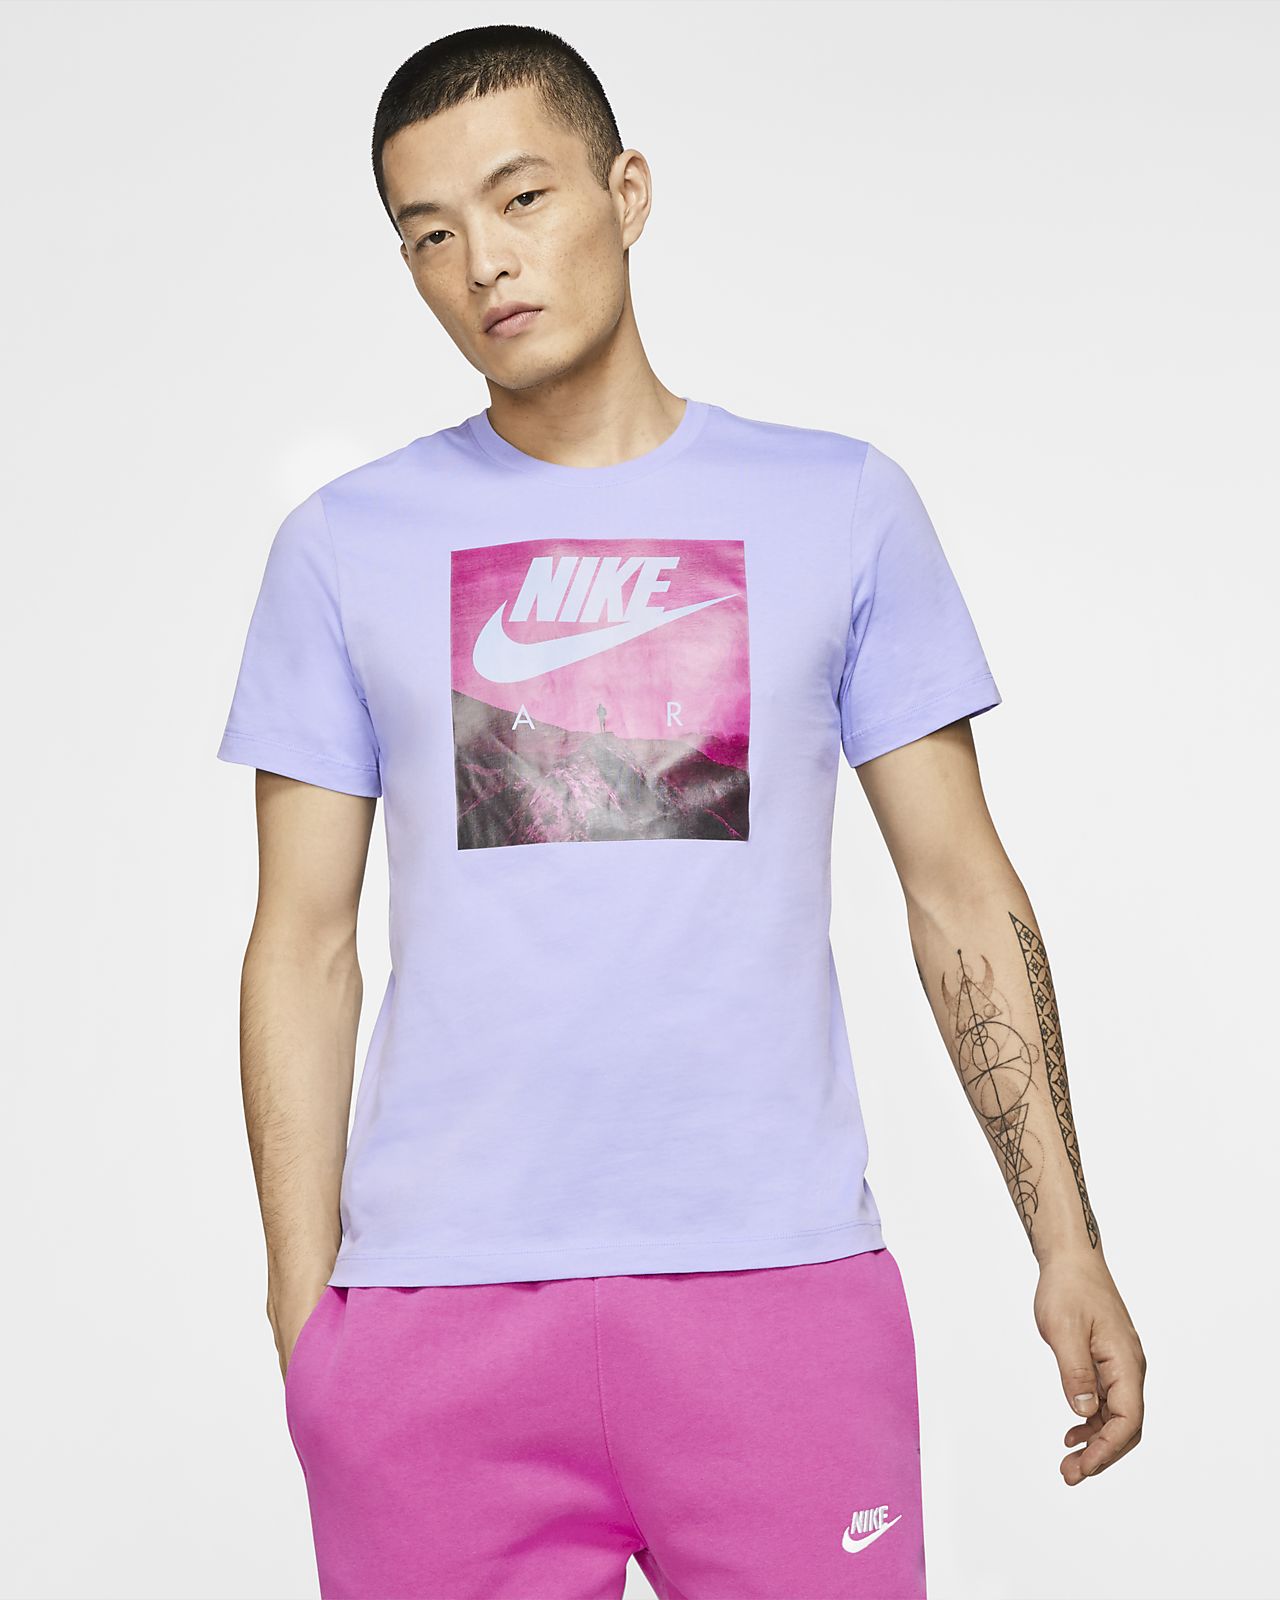 الامل pink and purple nike shirt 